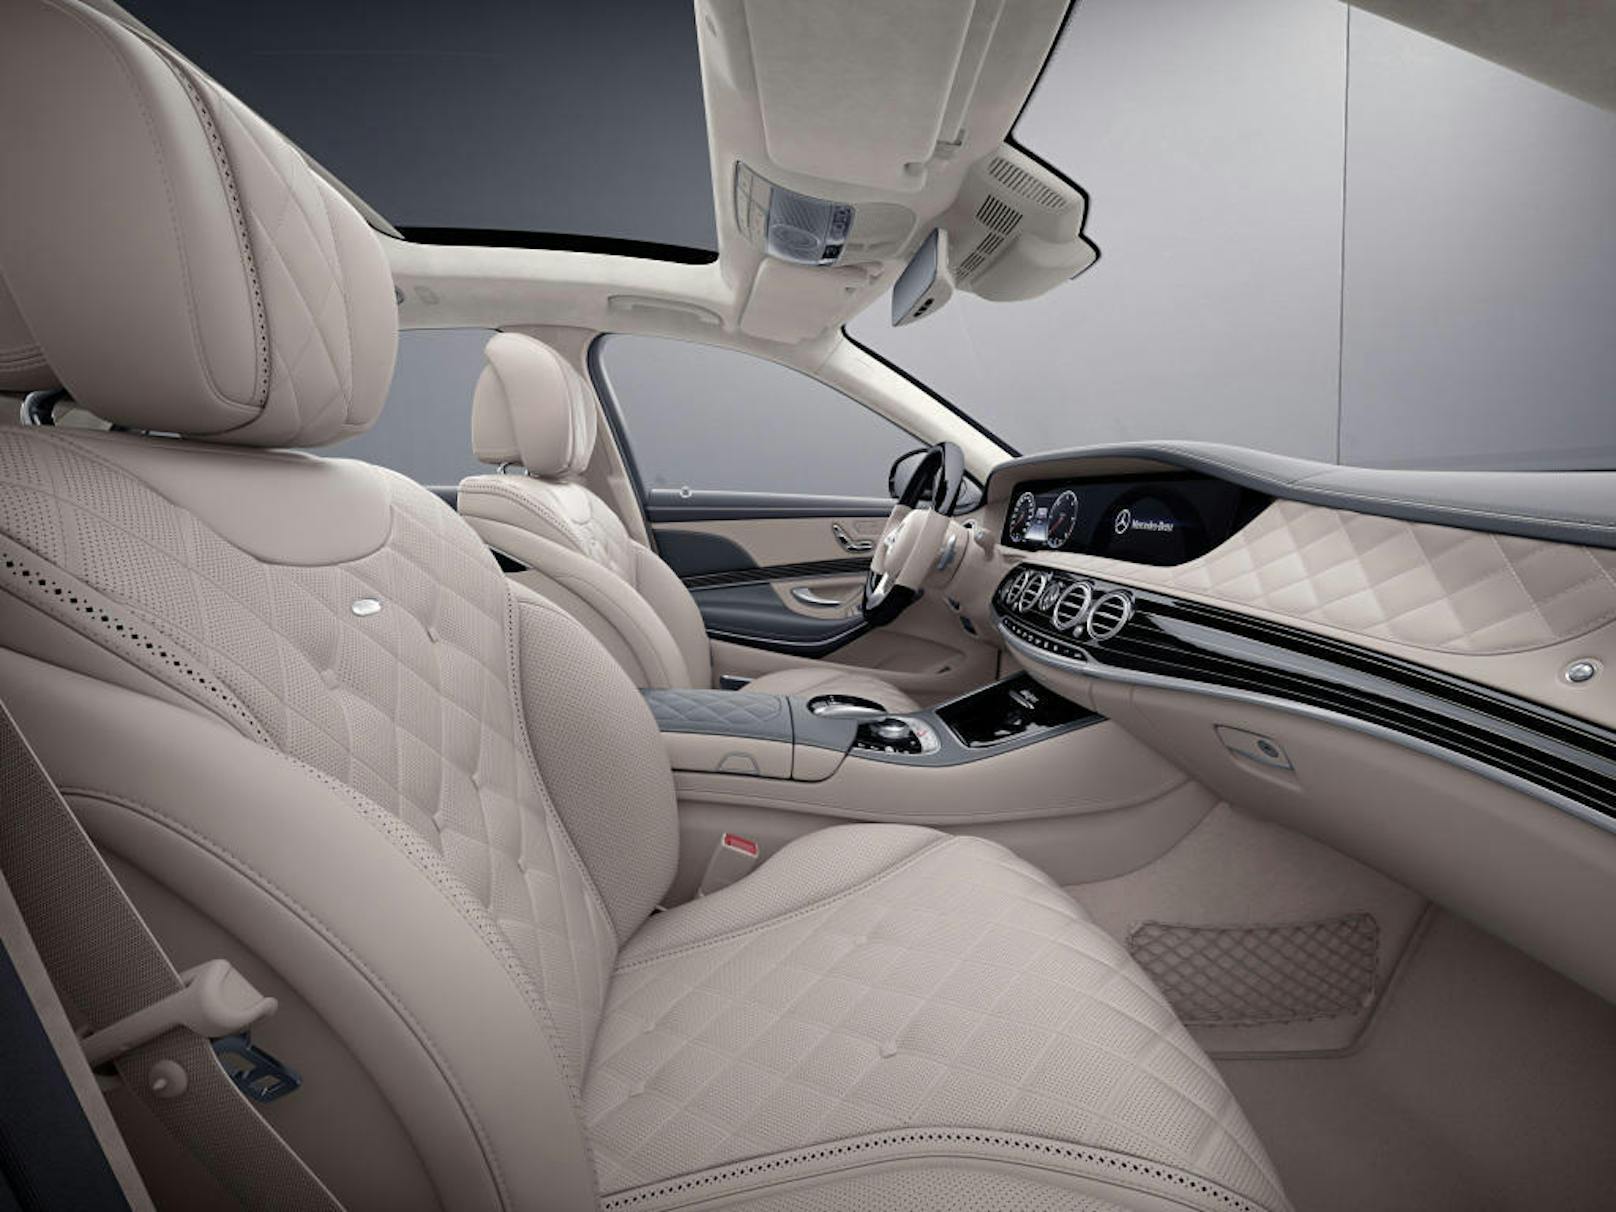 Das Vorbild: Der üppige Luxus im Interieur der S-Klasse von Mercedes-Benz lässt vorne...